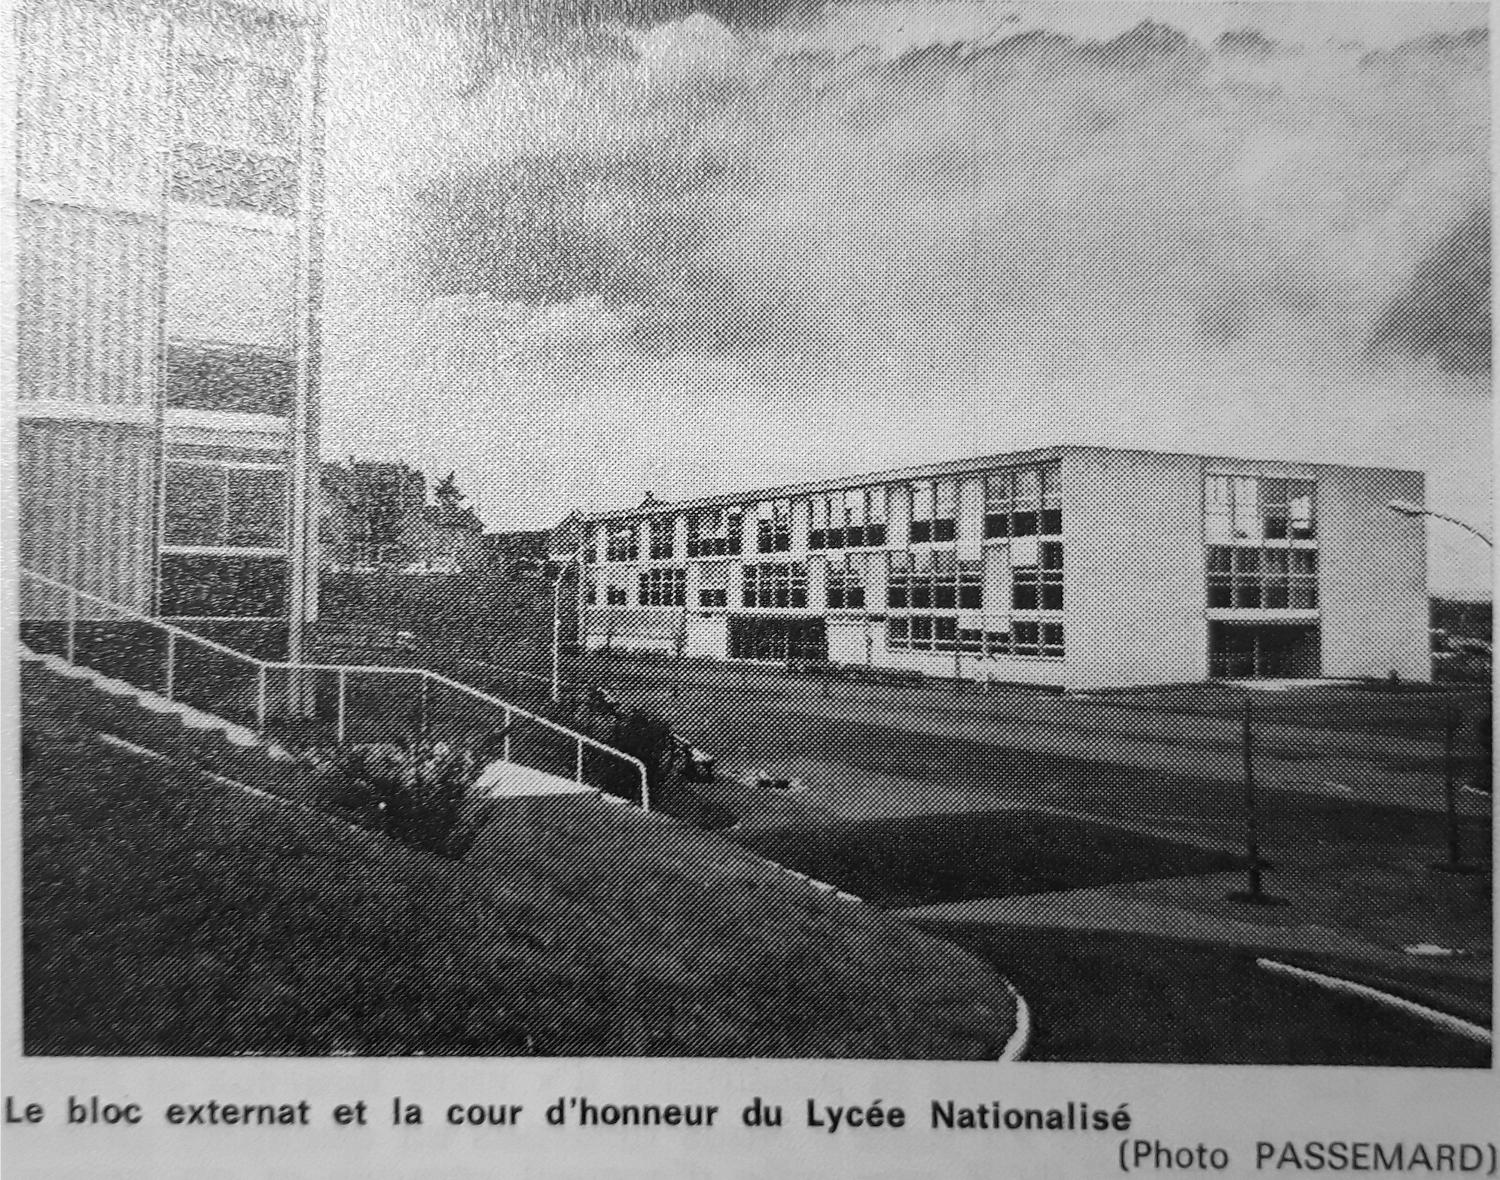 Collège d'enseignement technique et lycée classique et moderne de garçons et de filles, dit lycée nationalisé puis lycée de Haute-Auvergne (partiellement détruit)